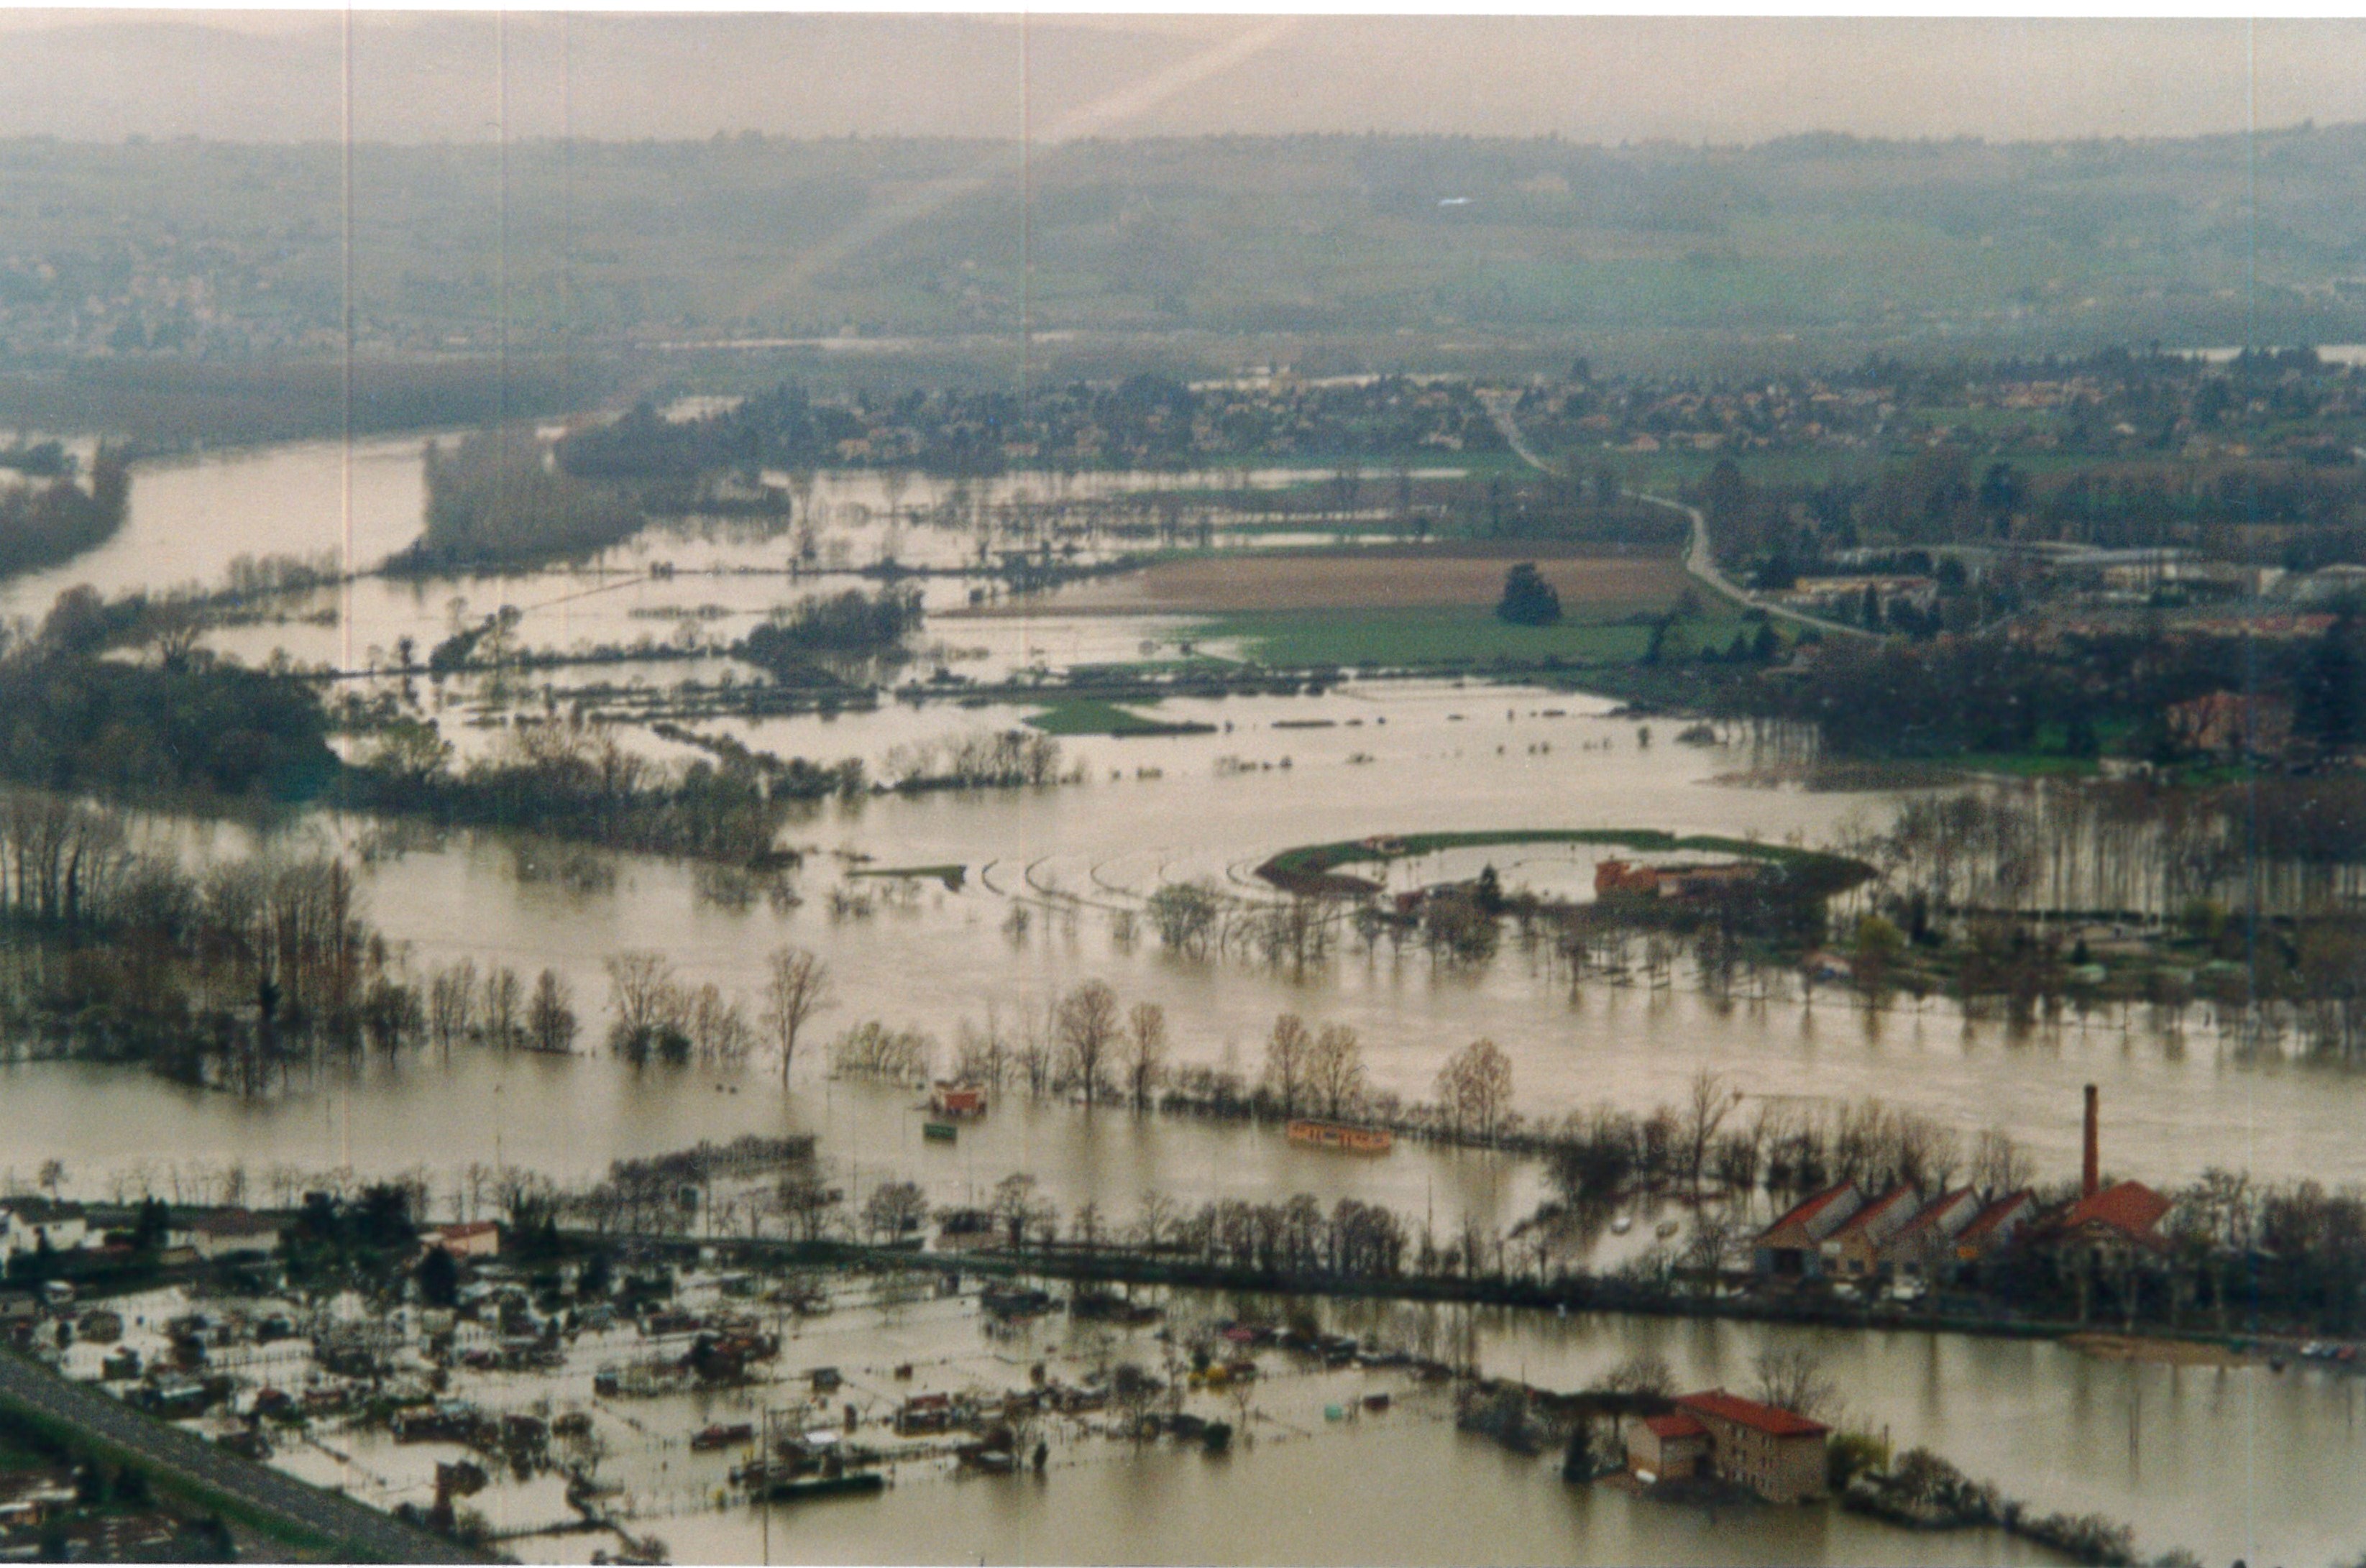 Crue de la Saône en 2001 à Trévoux